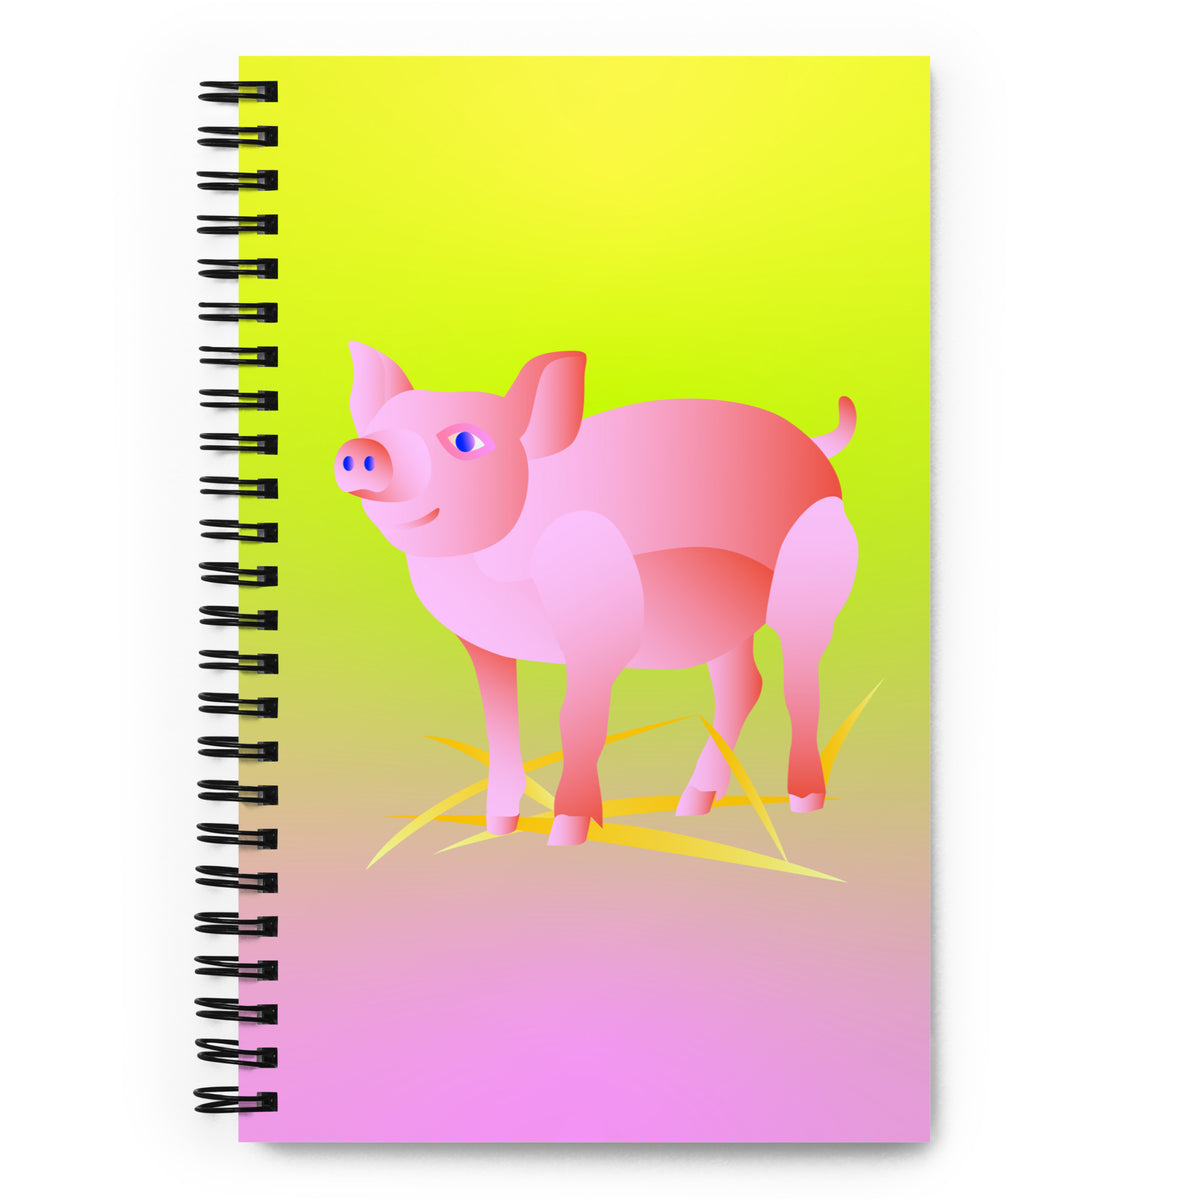 Pig Journal